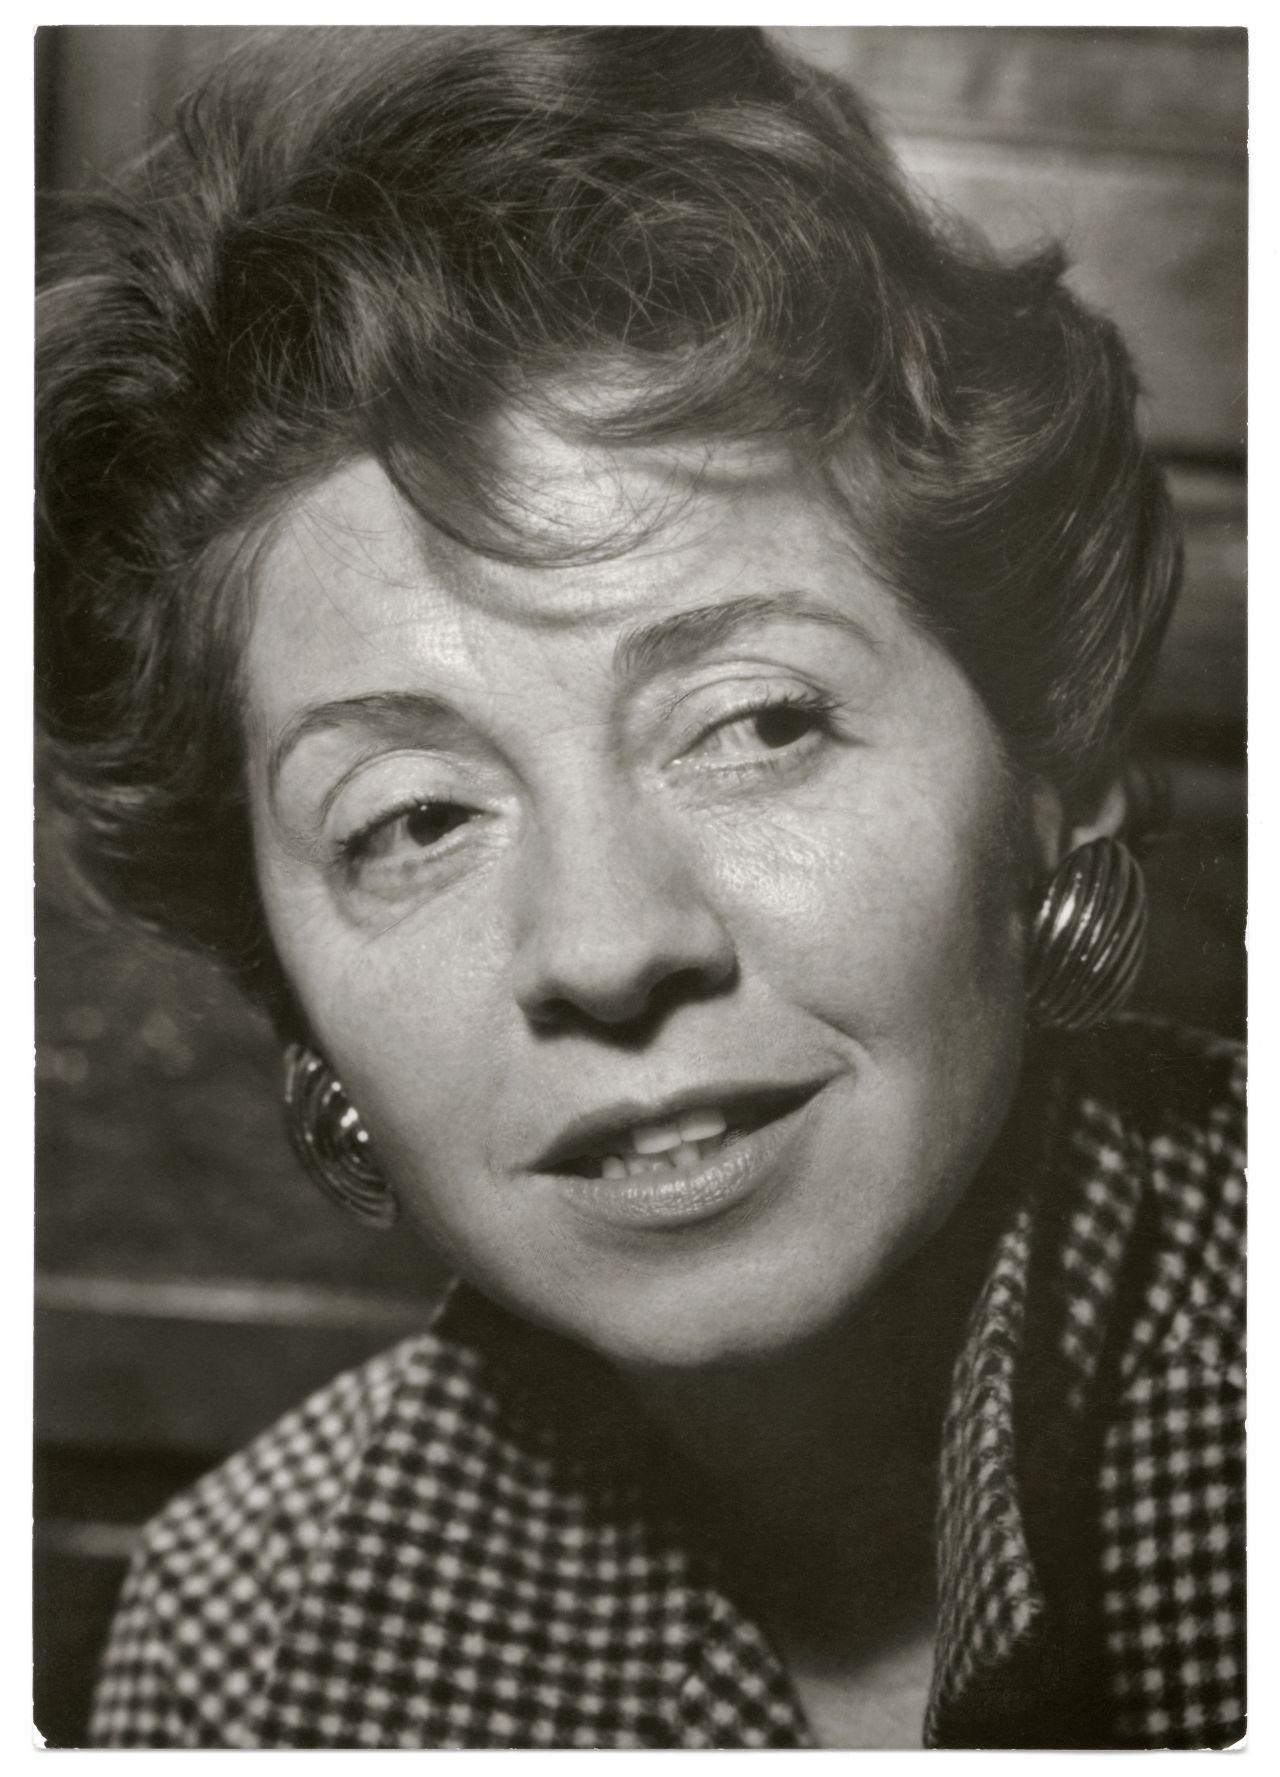 Porträtaufnahme von Inge Meysel mit Ohrringen, 1950-1960.